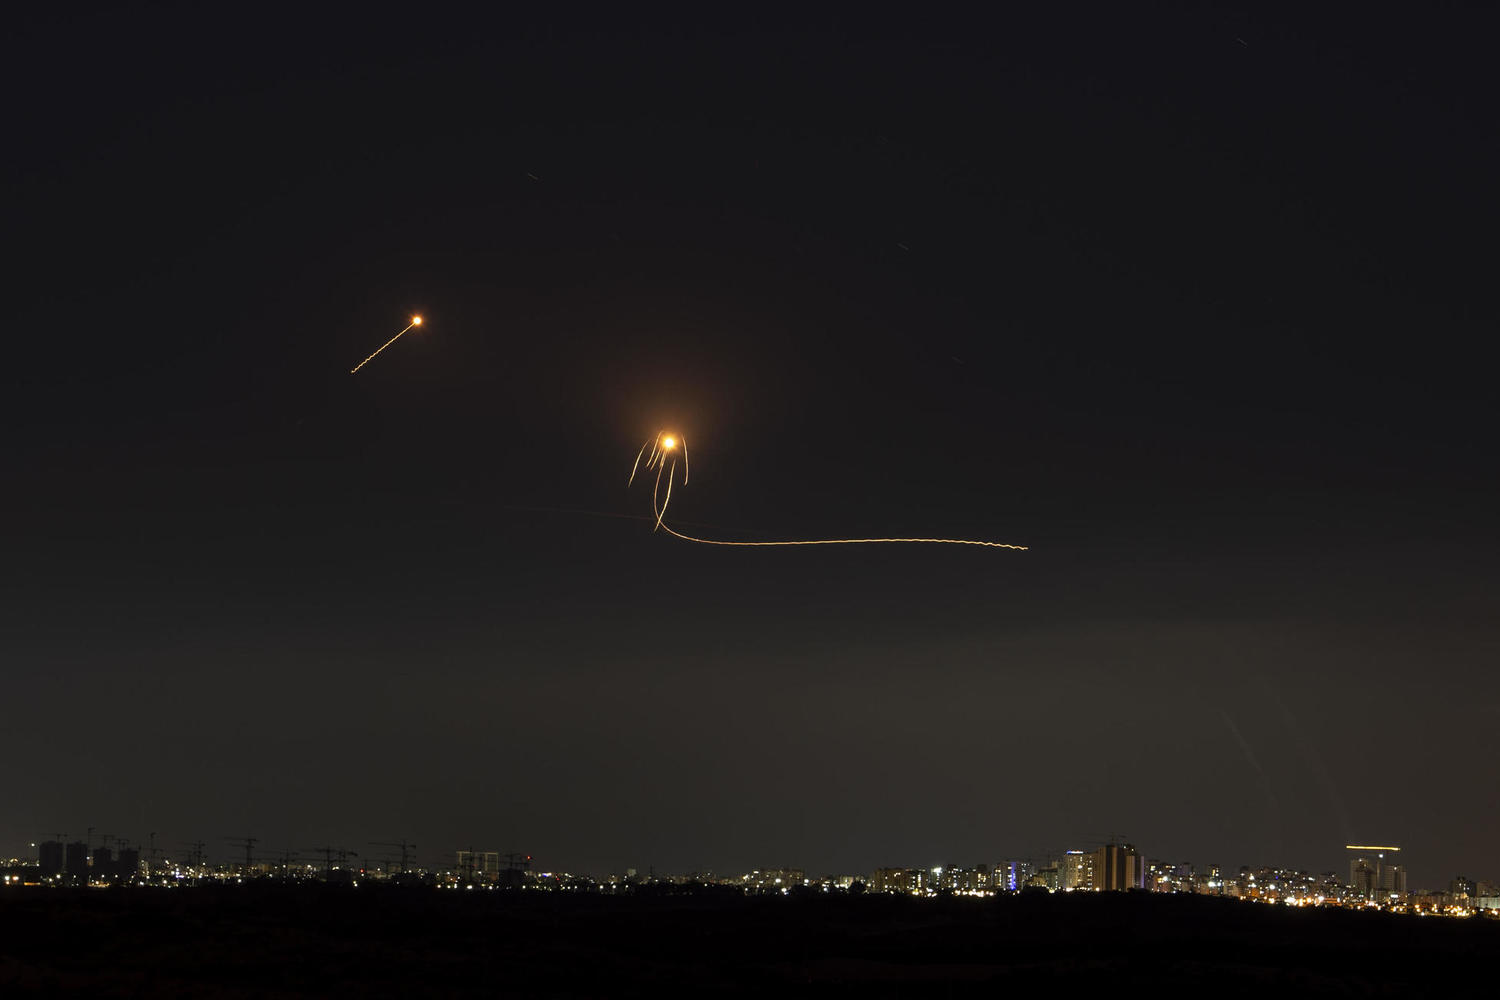 Обострение на южных границах: ракетная тревога после бомбардировок Газы